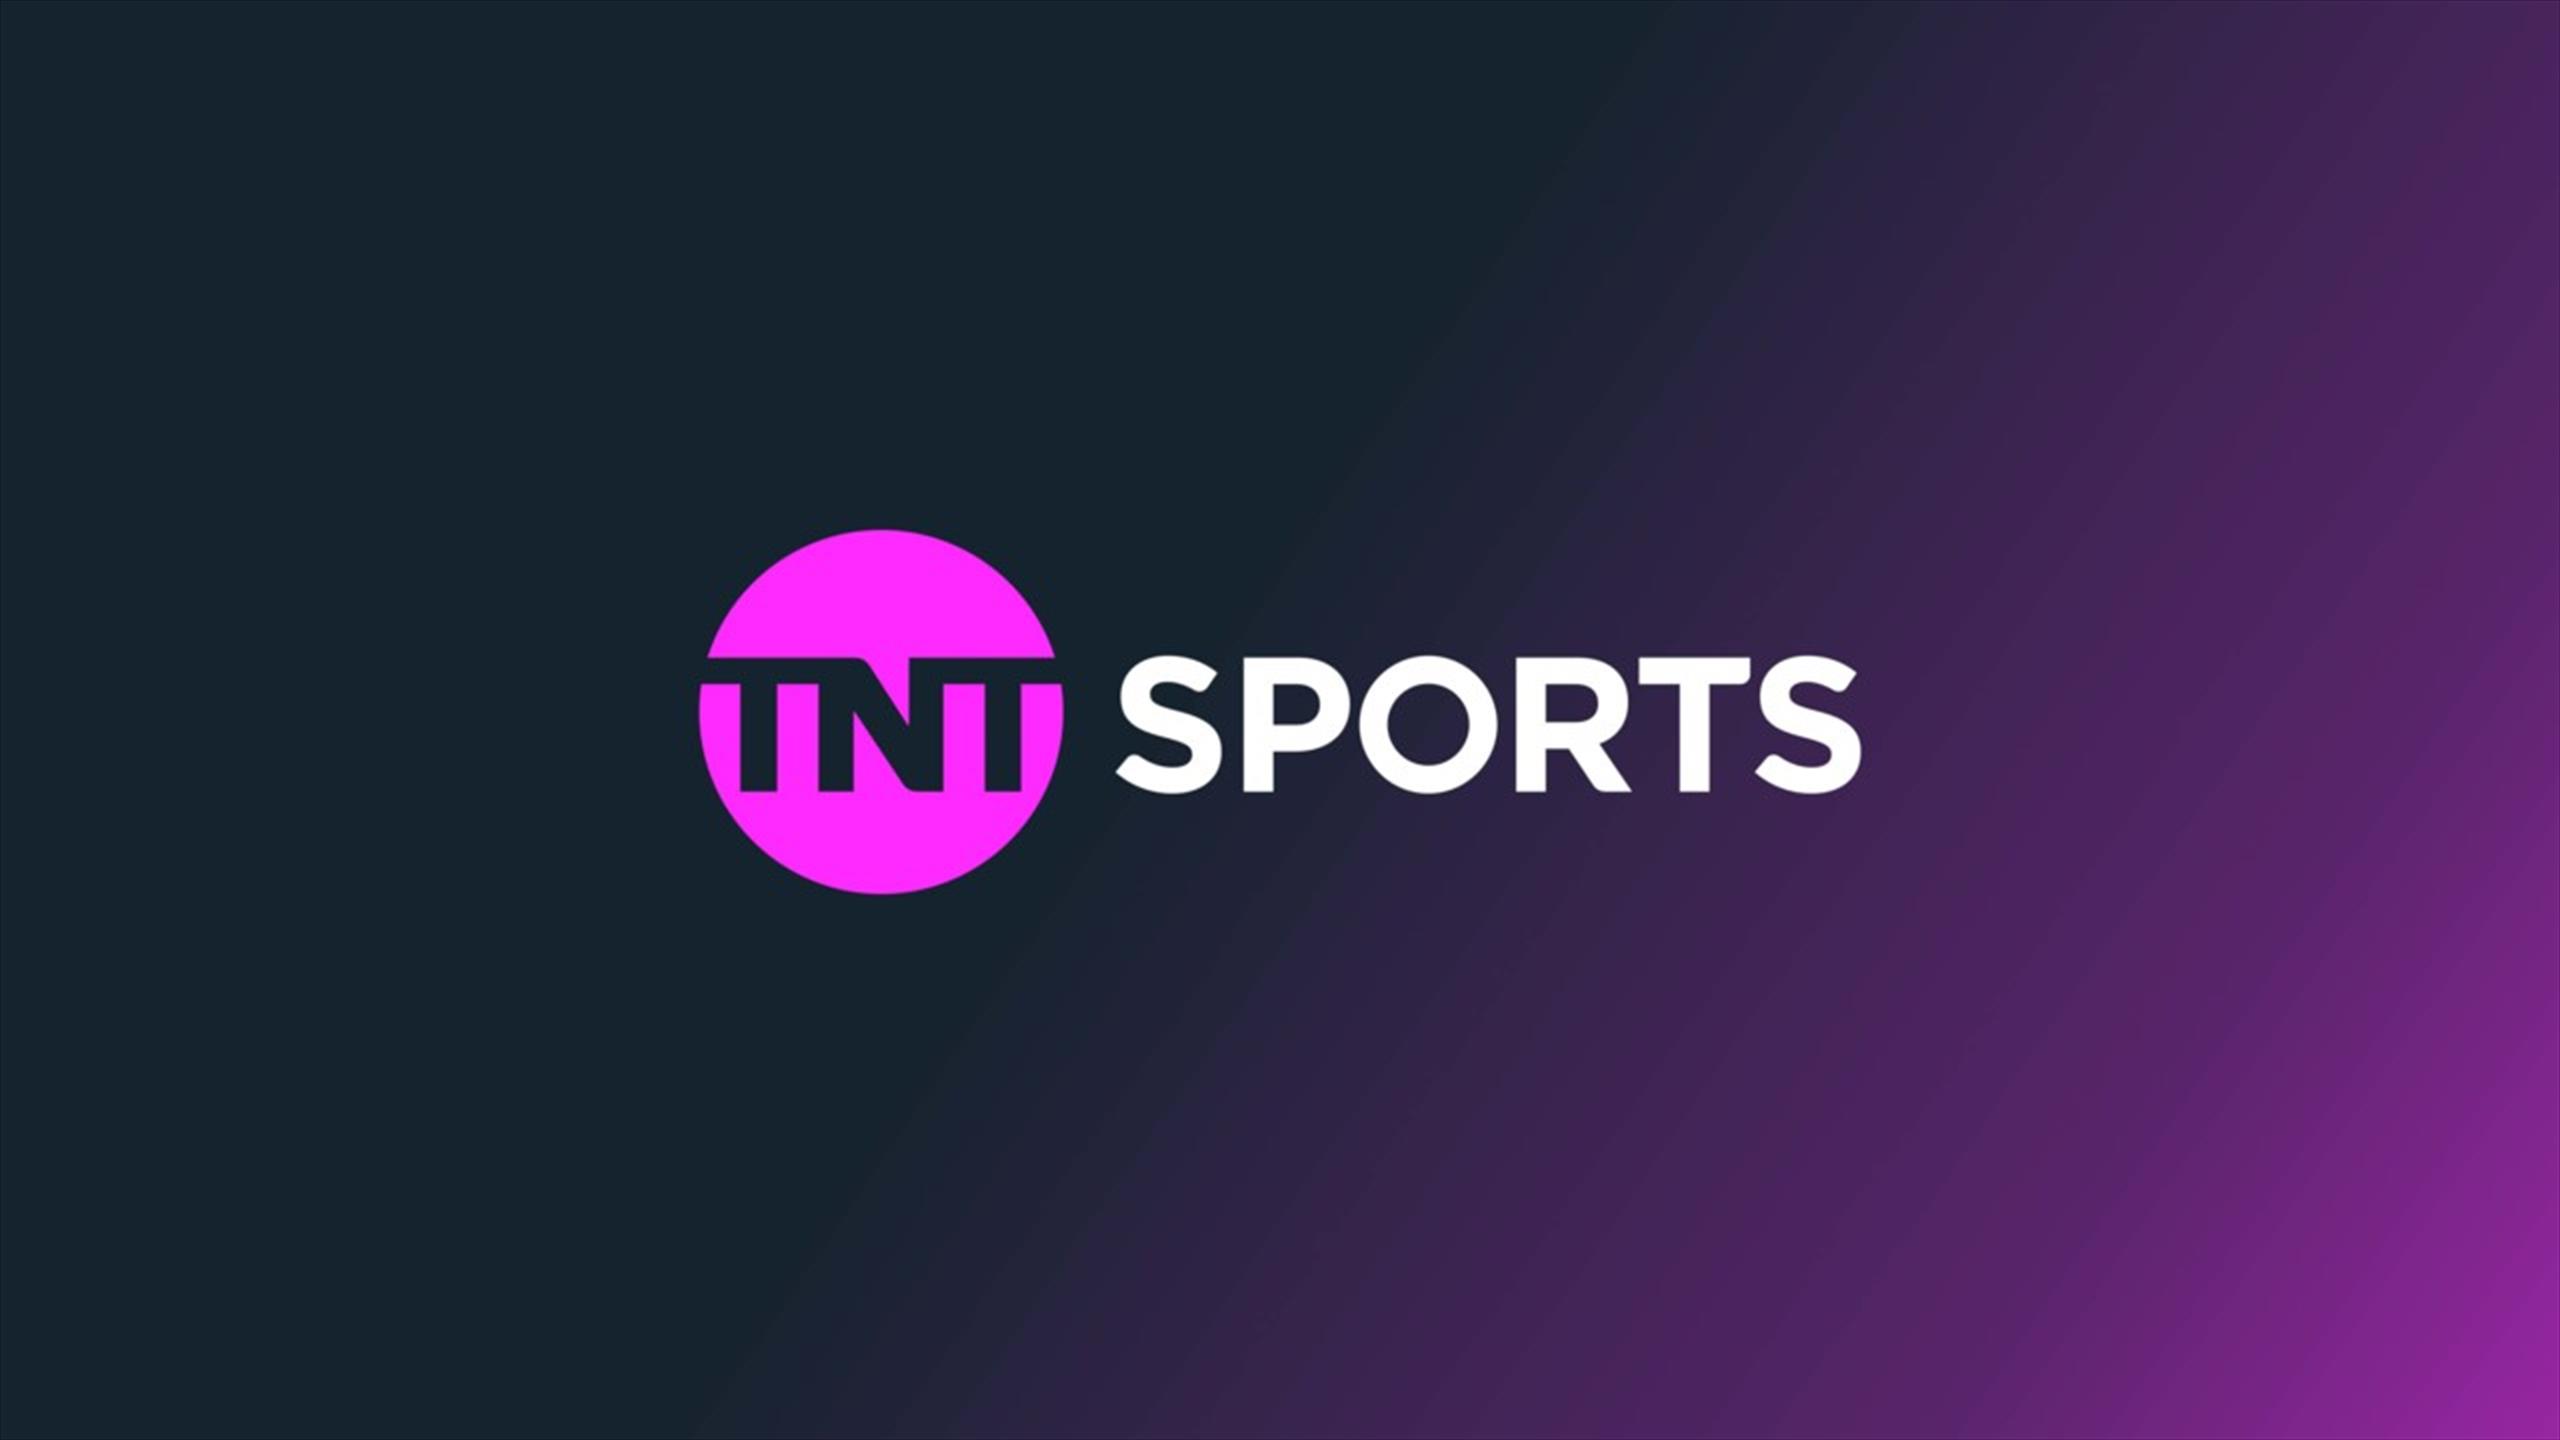 TNT to Showcase “Farewell” Matches for U.S. Soccer Icons Julie Ertz on Thursday, Sept. 21